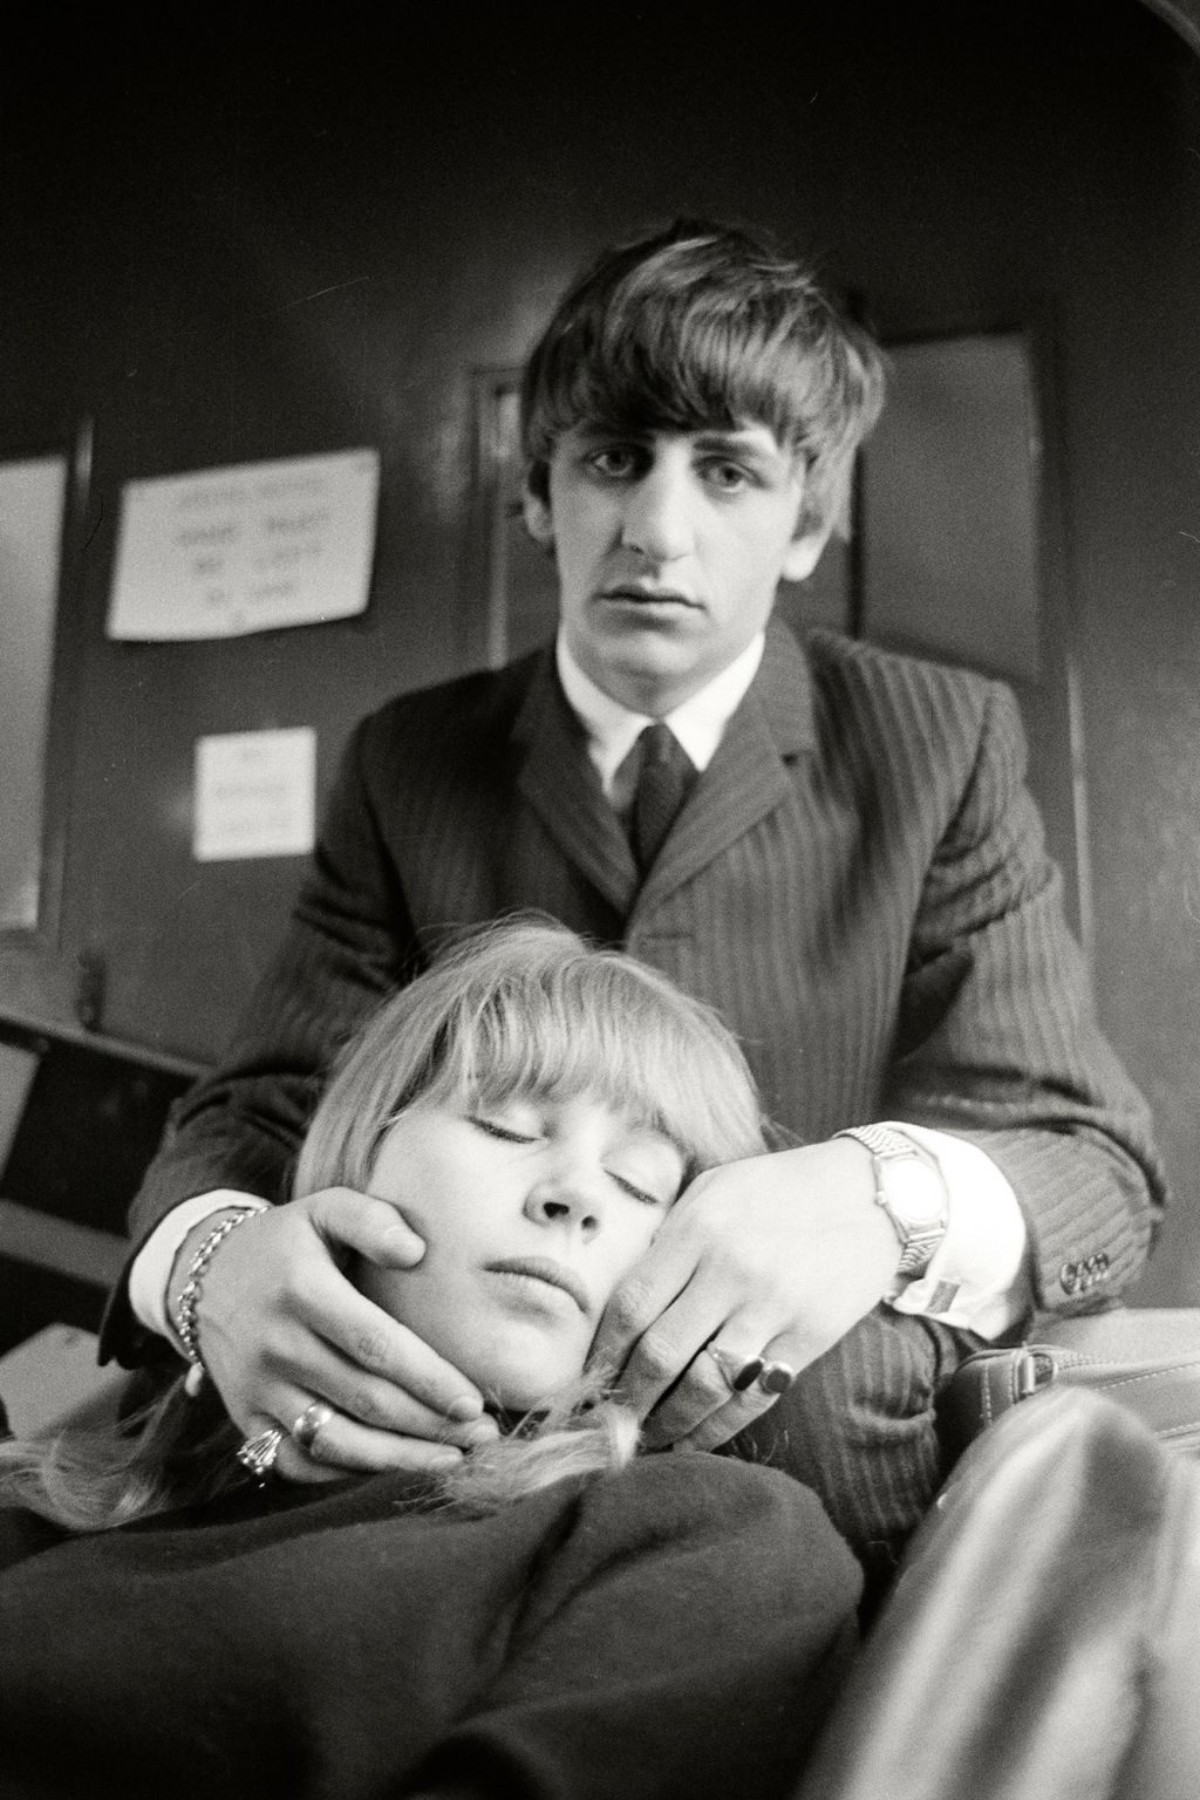 Ringo Starr and Astrid Kirchherr